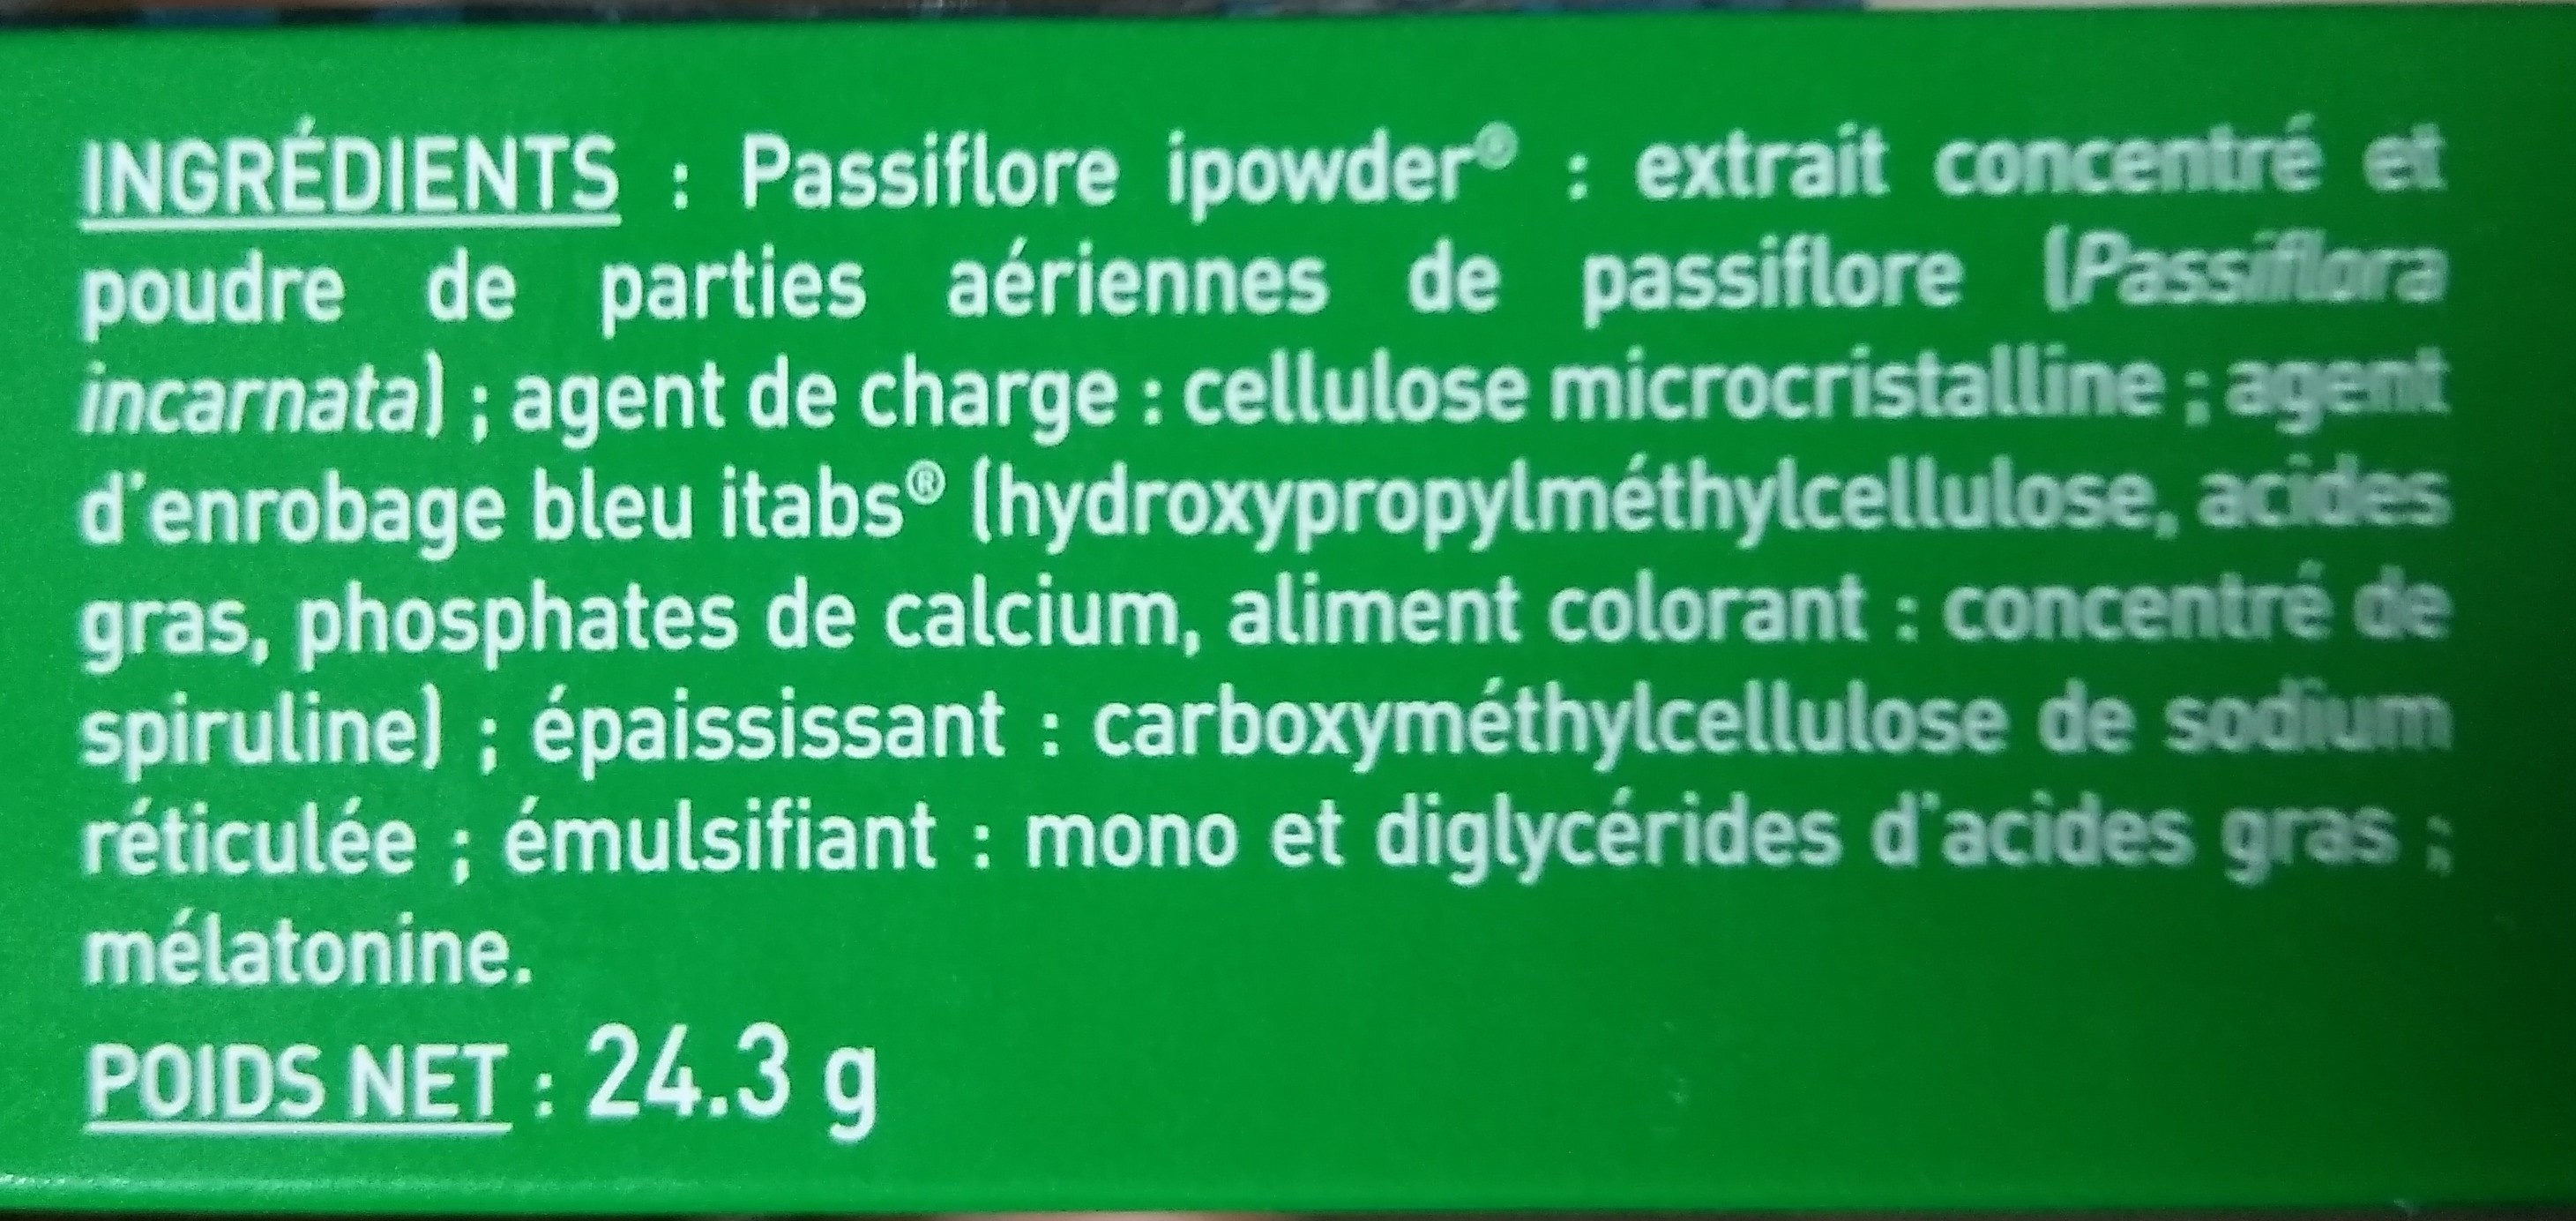 EuphytoseNuit - Ingredients - fr